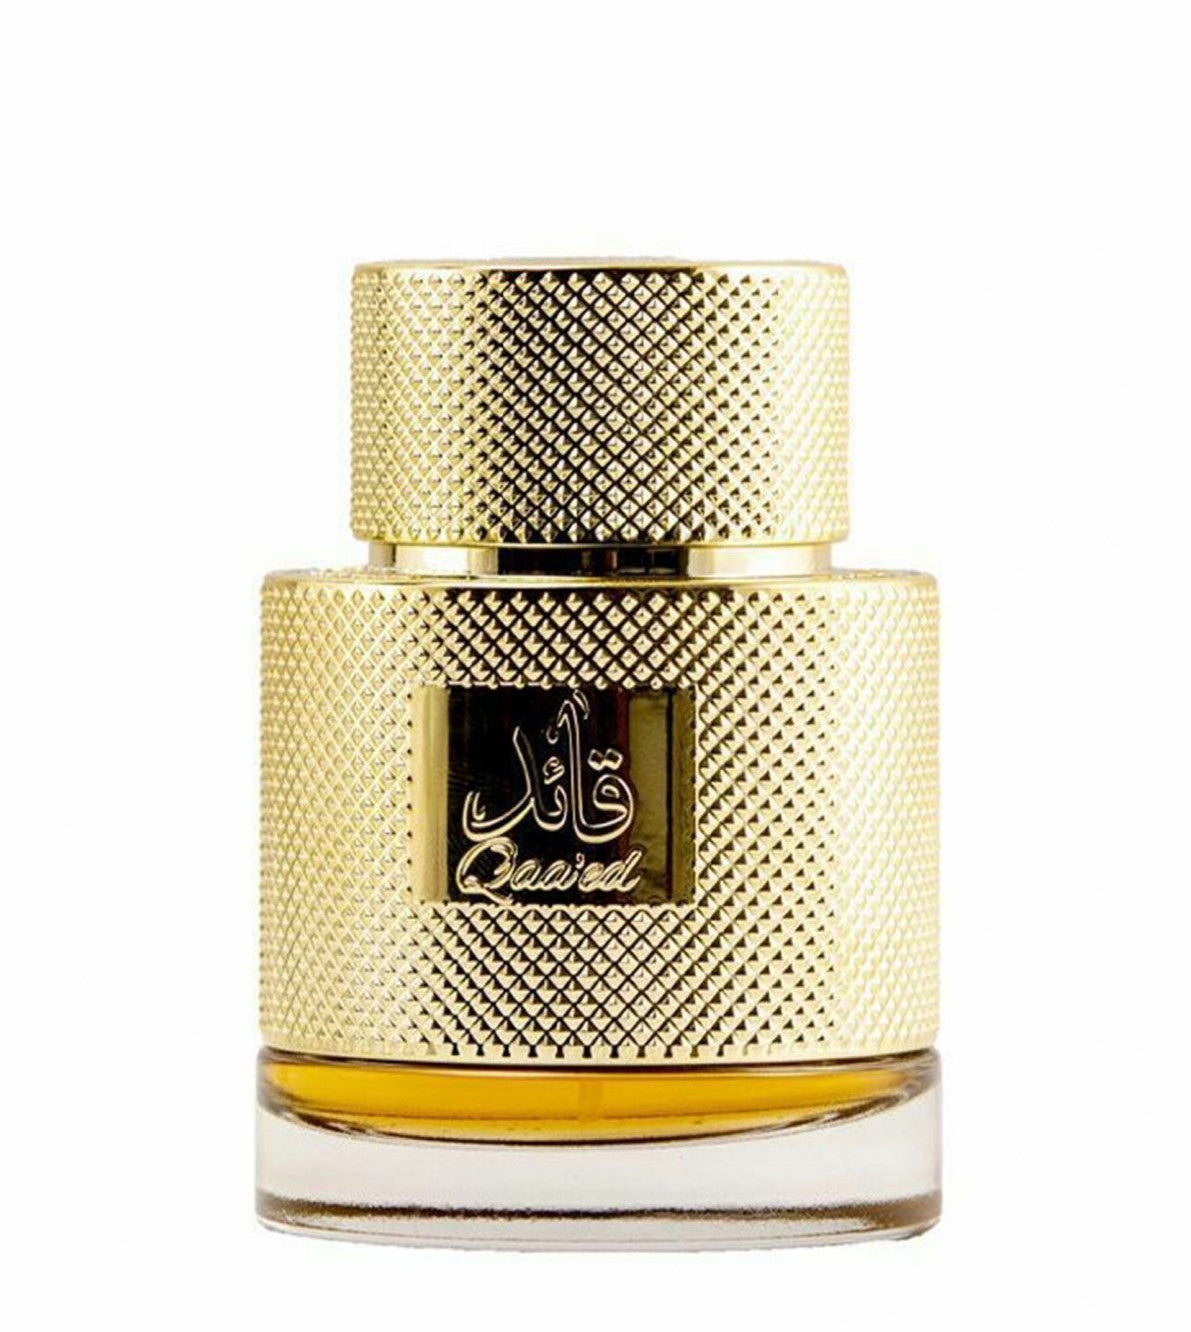 100 ml Eau de Parfum Qa'eed intenzivní kořeněná  vůně vanilky pro muže i ženy | -80% Akce na Šperky